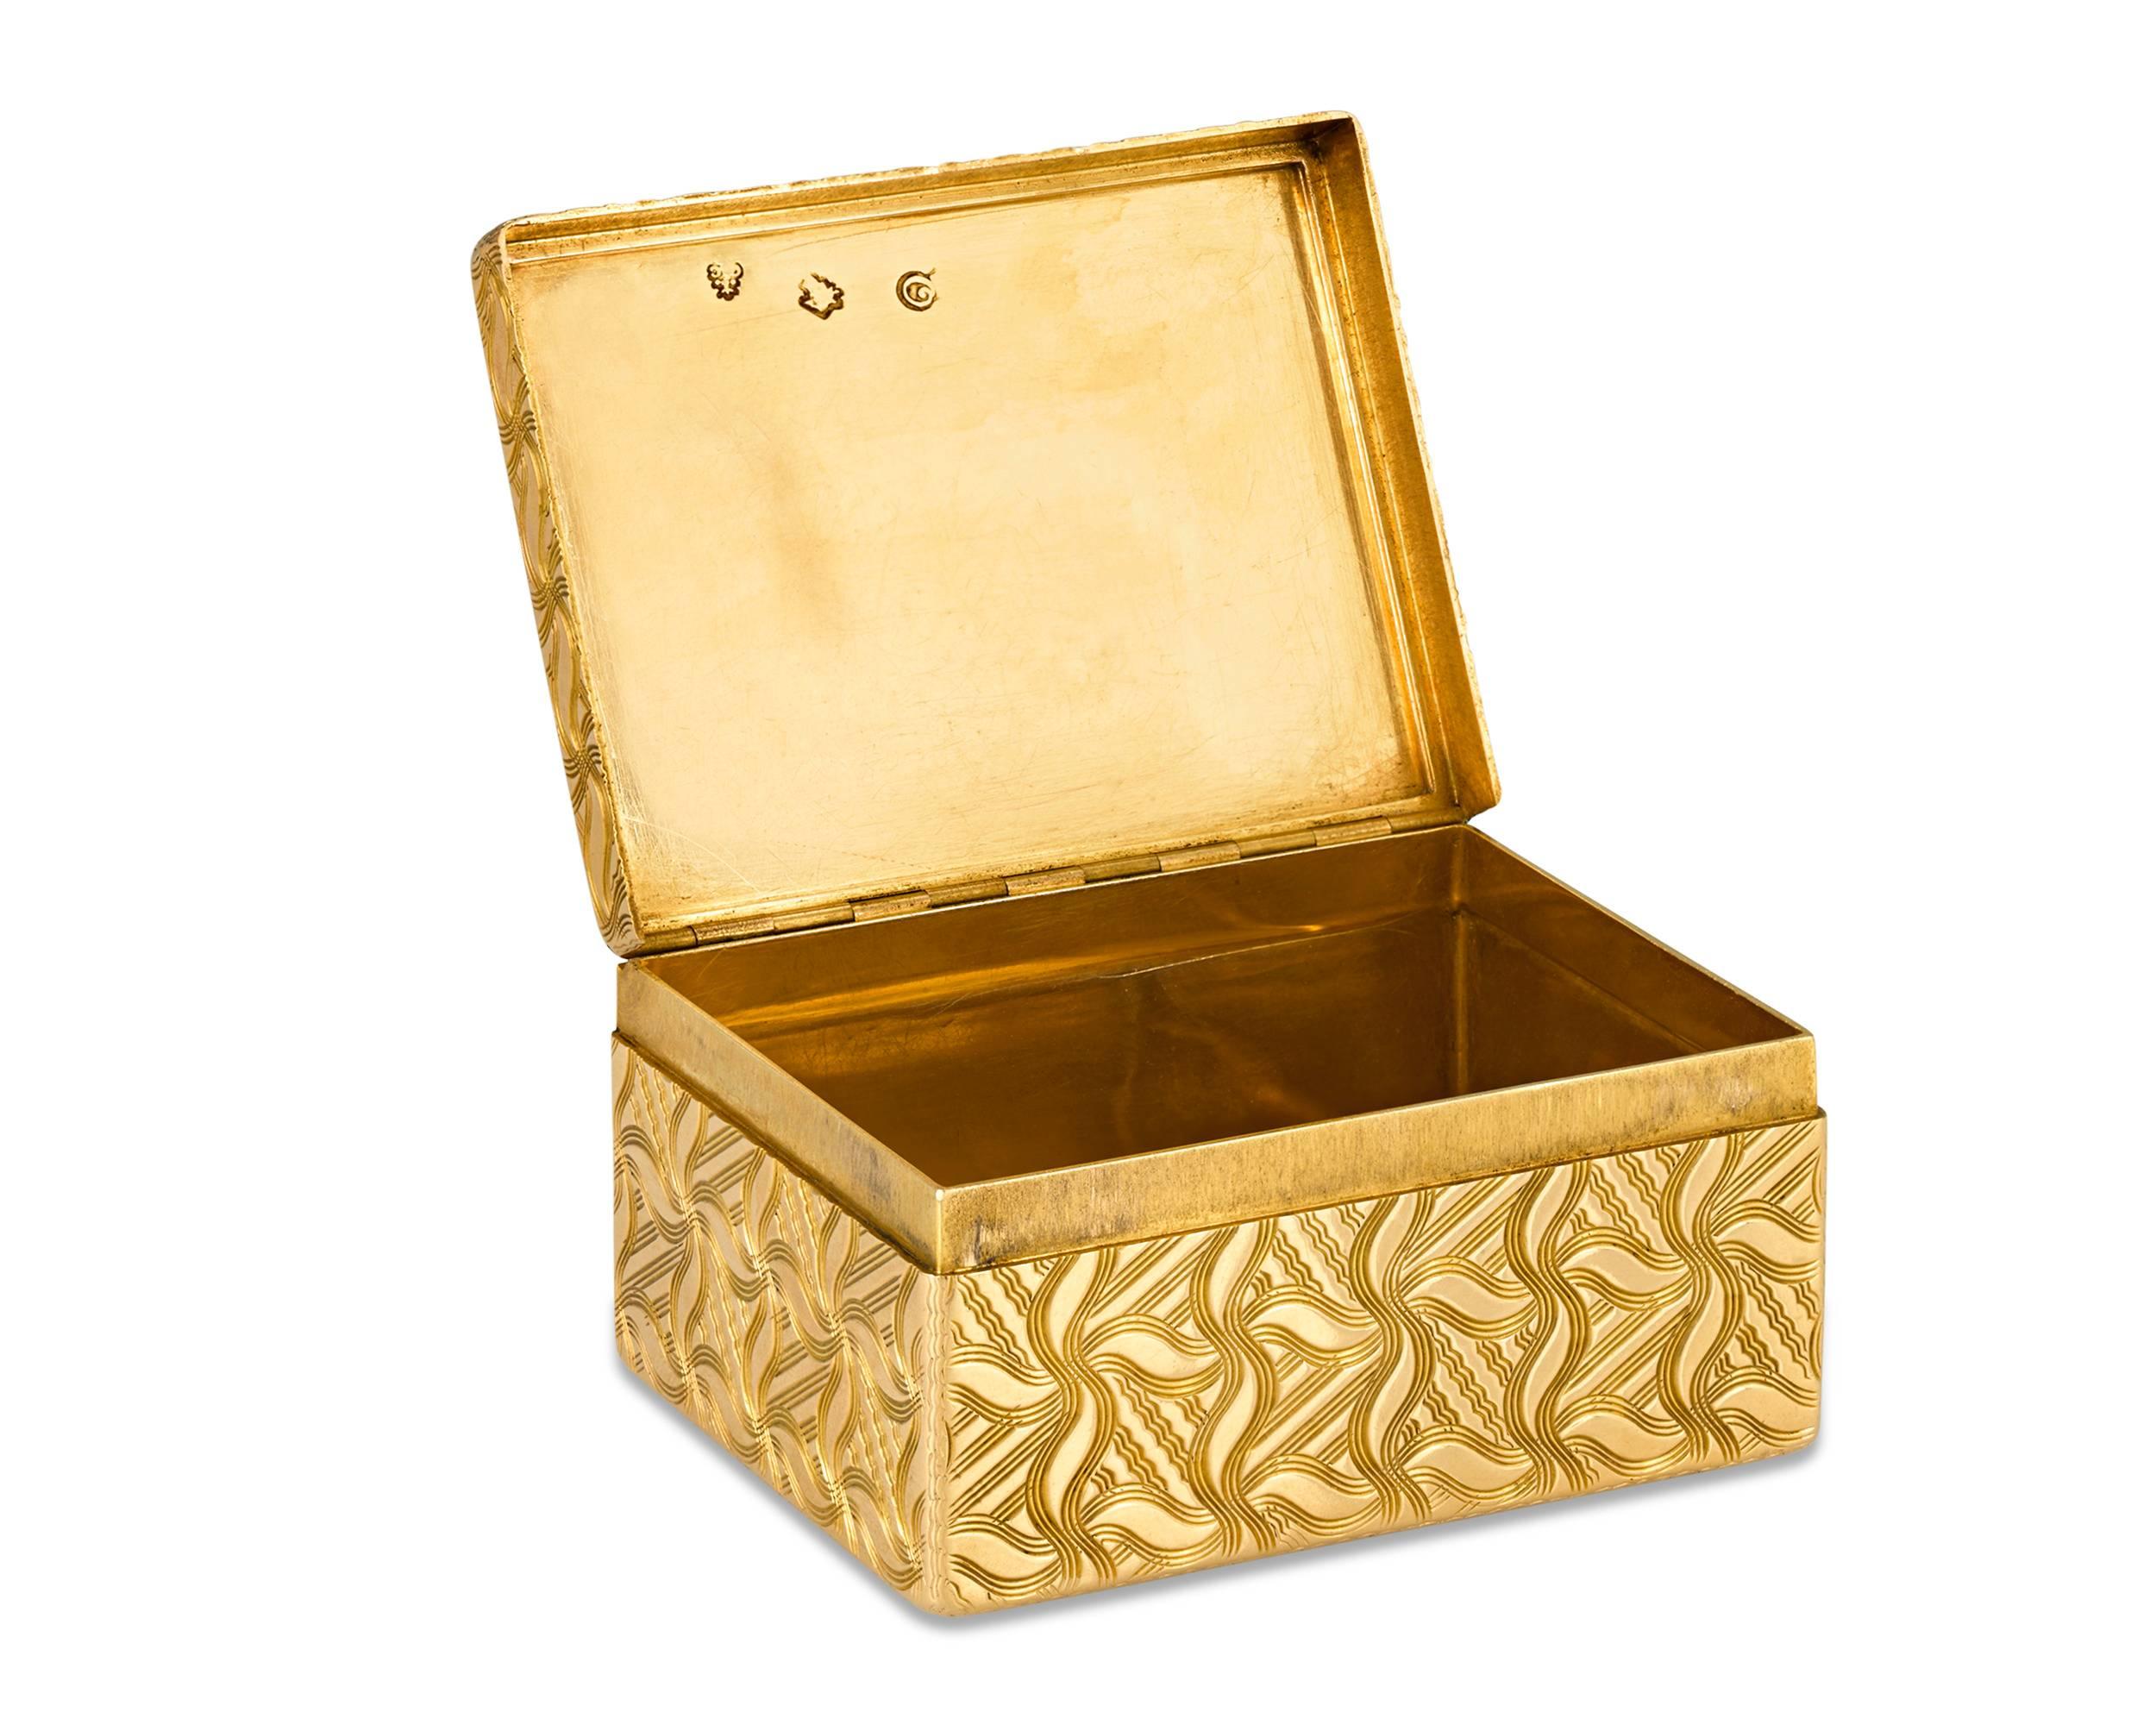 Cette luxueuse tabatière en or d'époque Louis XV a été fabriquée par le maître orfèvre français Germain Chayé. Réalisé en or jaune 18 carats, ce coffret exceptionnel fait preuve d'un art remarquable avec un guillochage et un traçage complexes qui